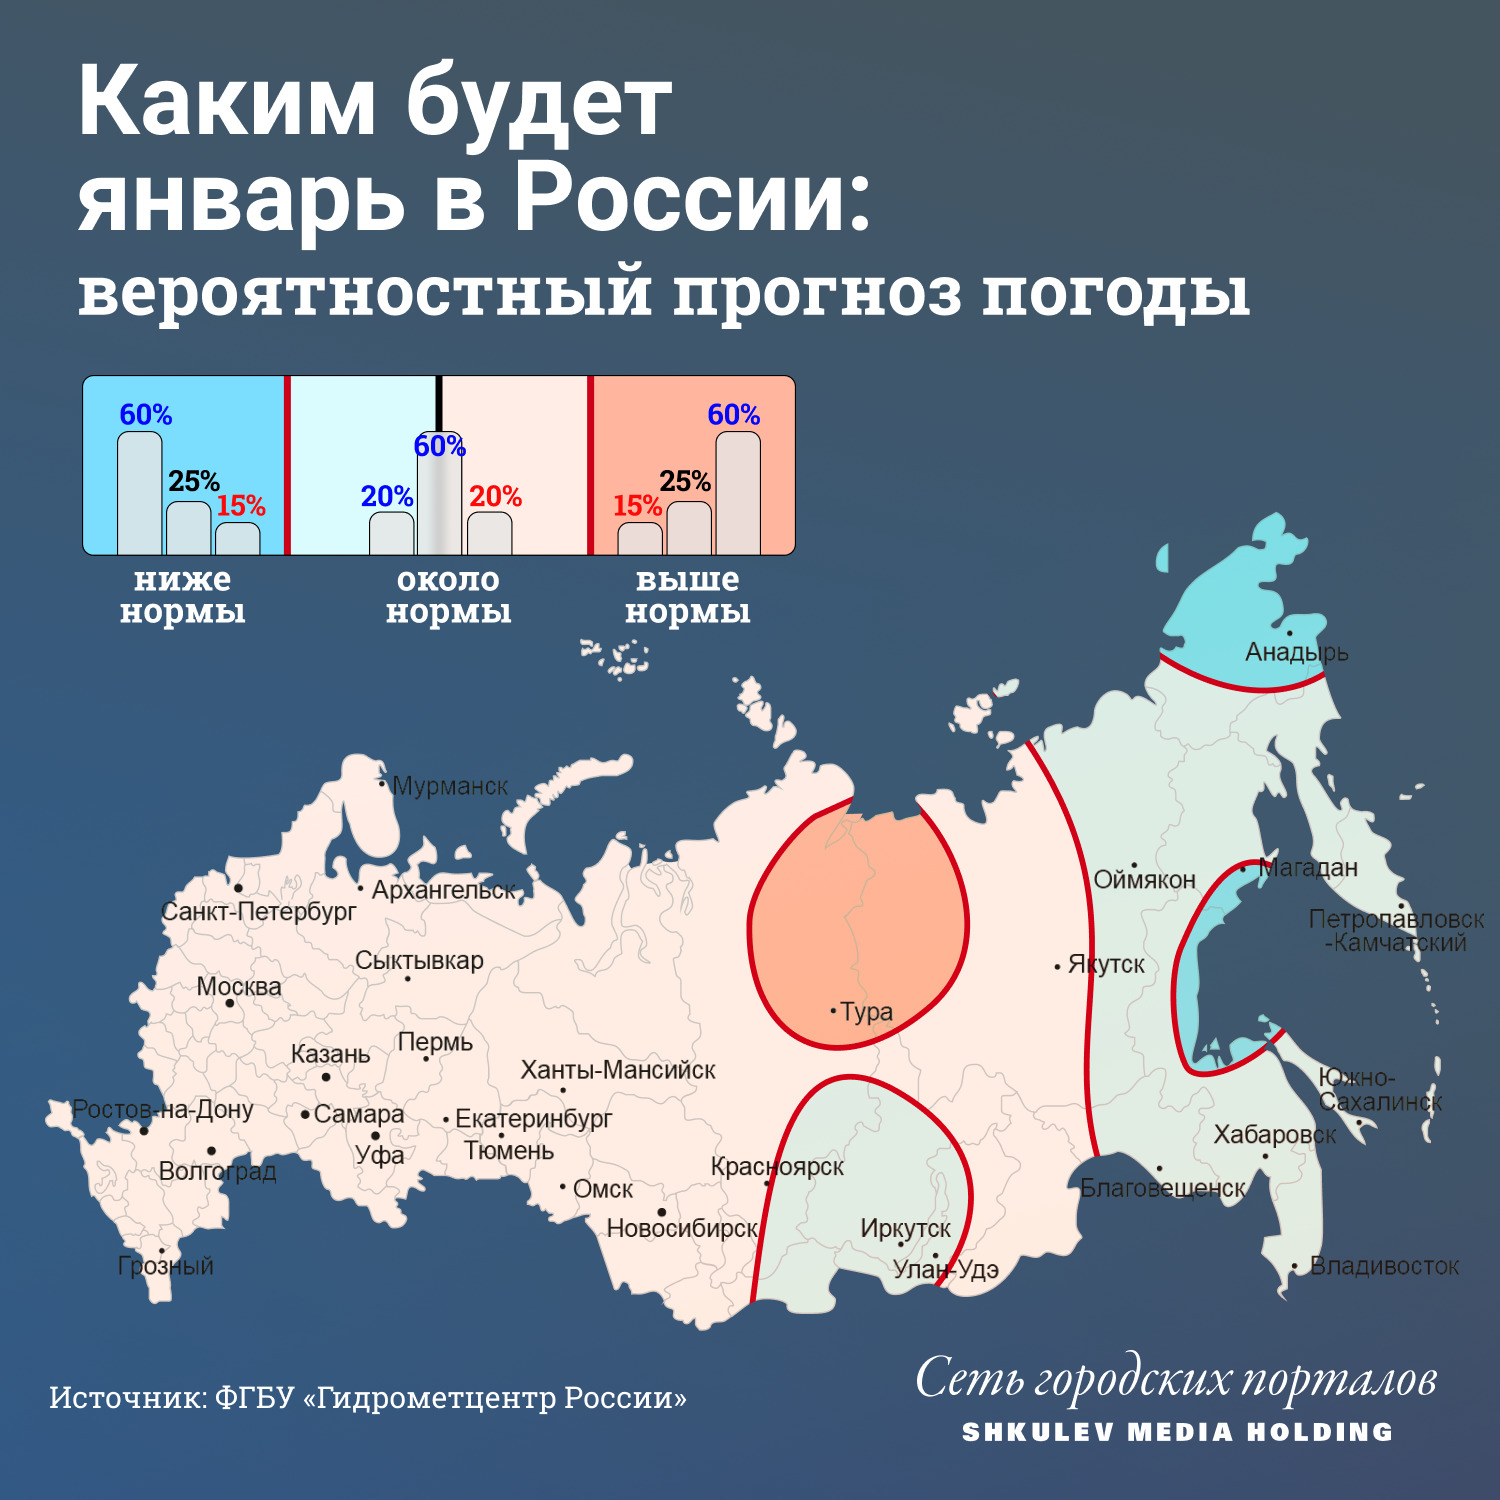 Сильнее всего в январе потеплеет в Якутии, правда только относительно среднемноголетних значений